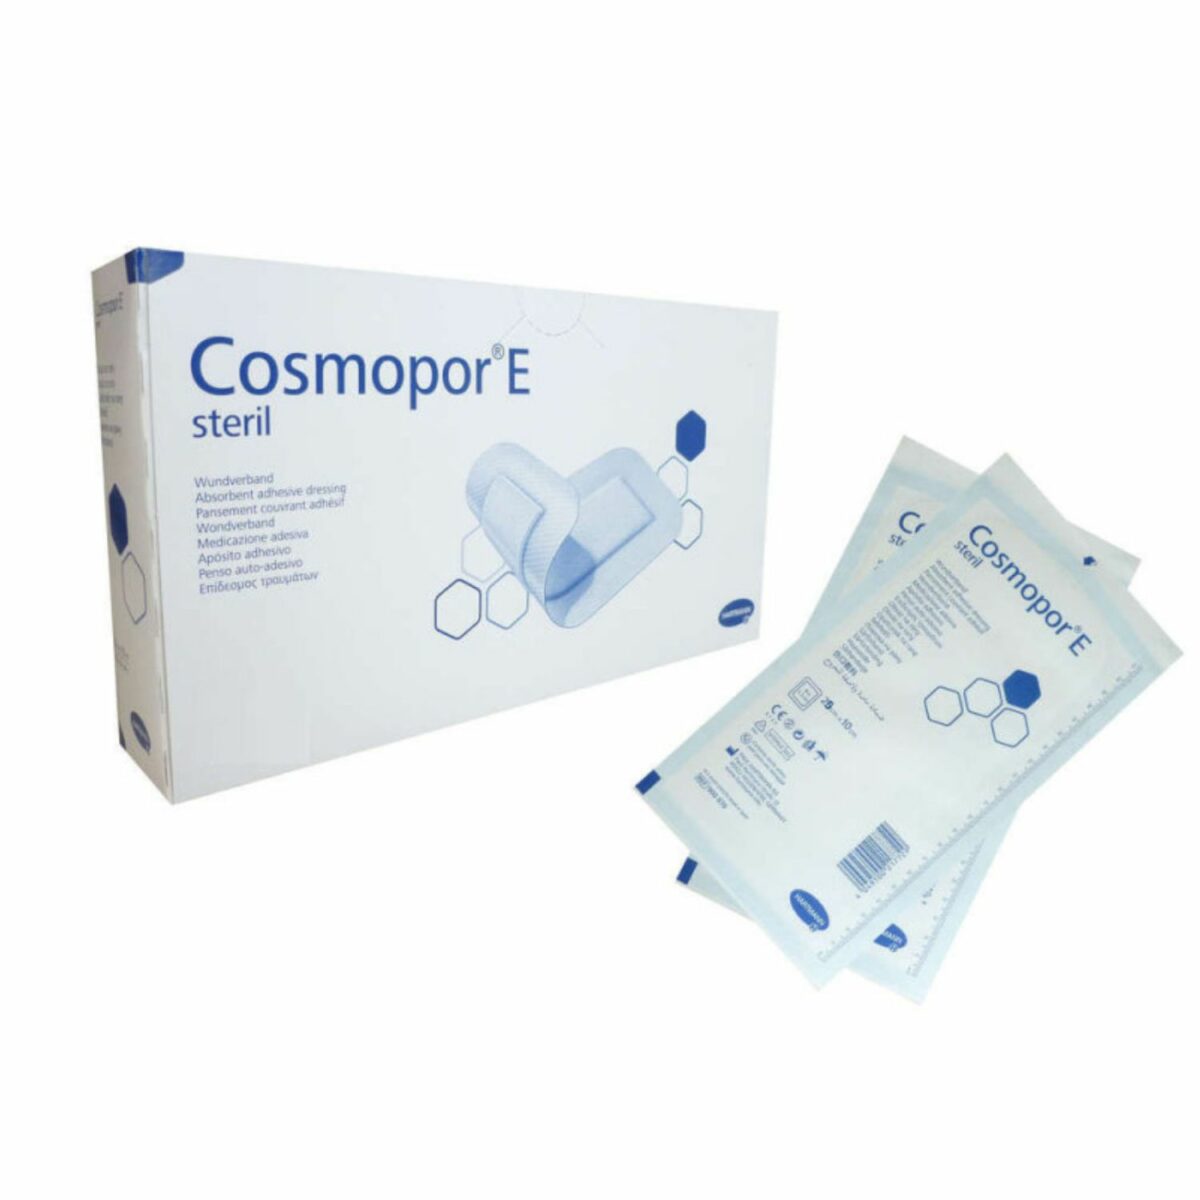 Cosmopore E 1x(25x10cm)